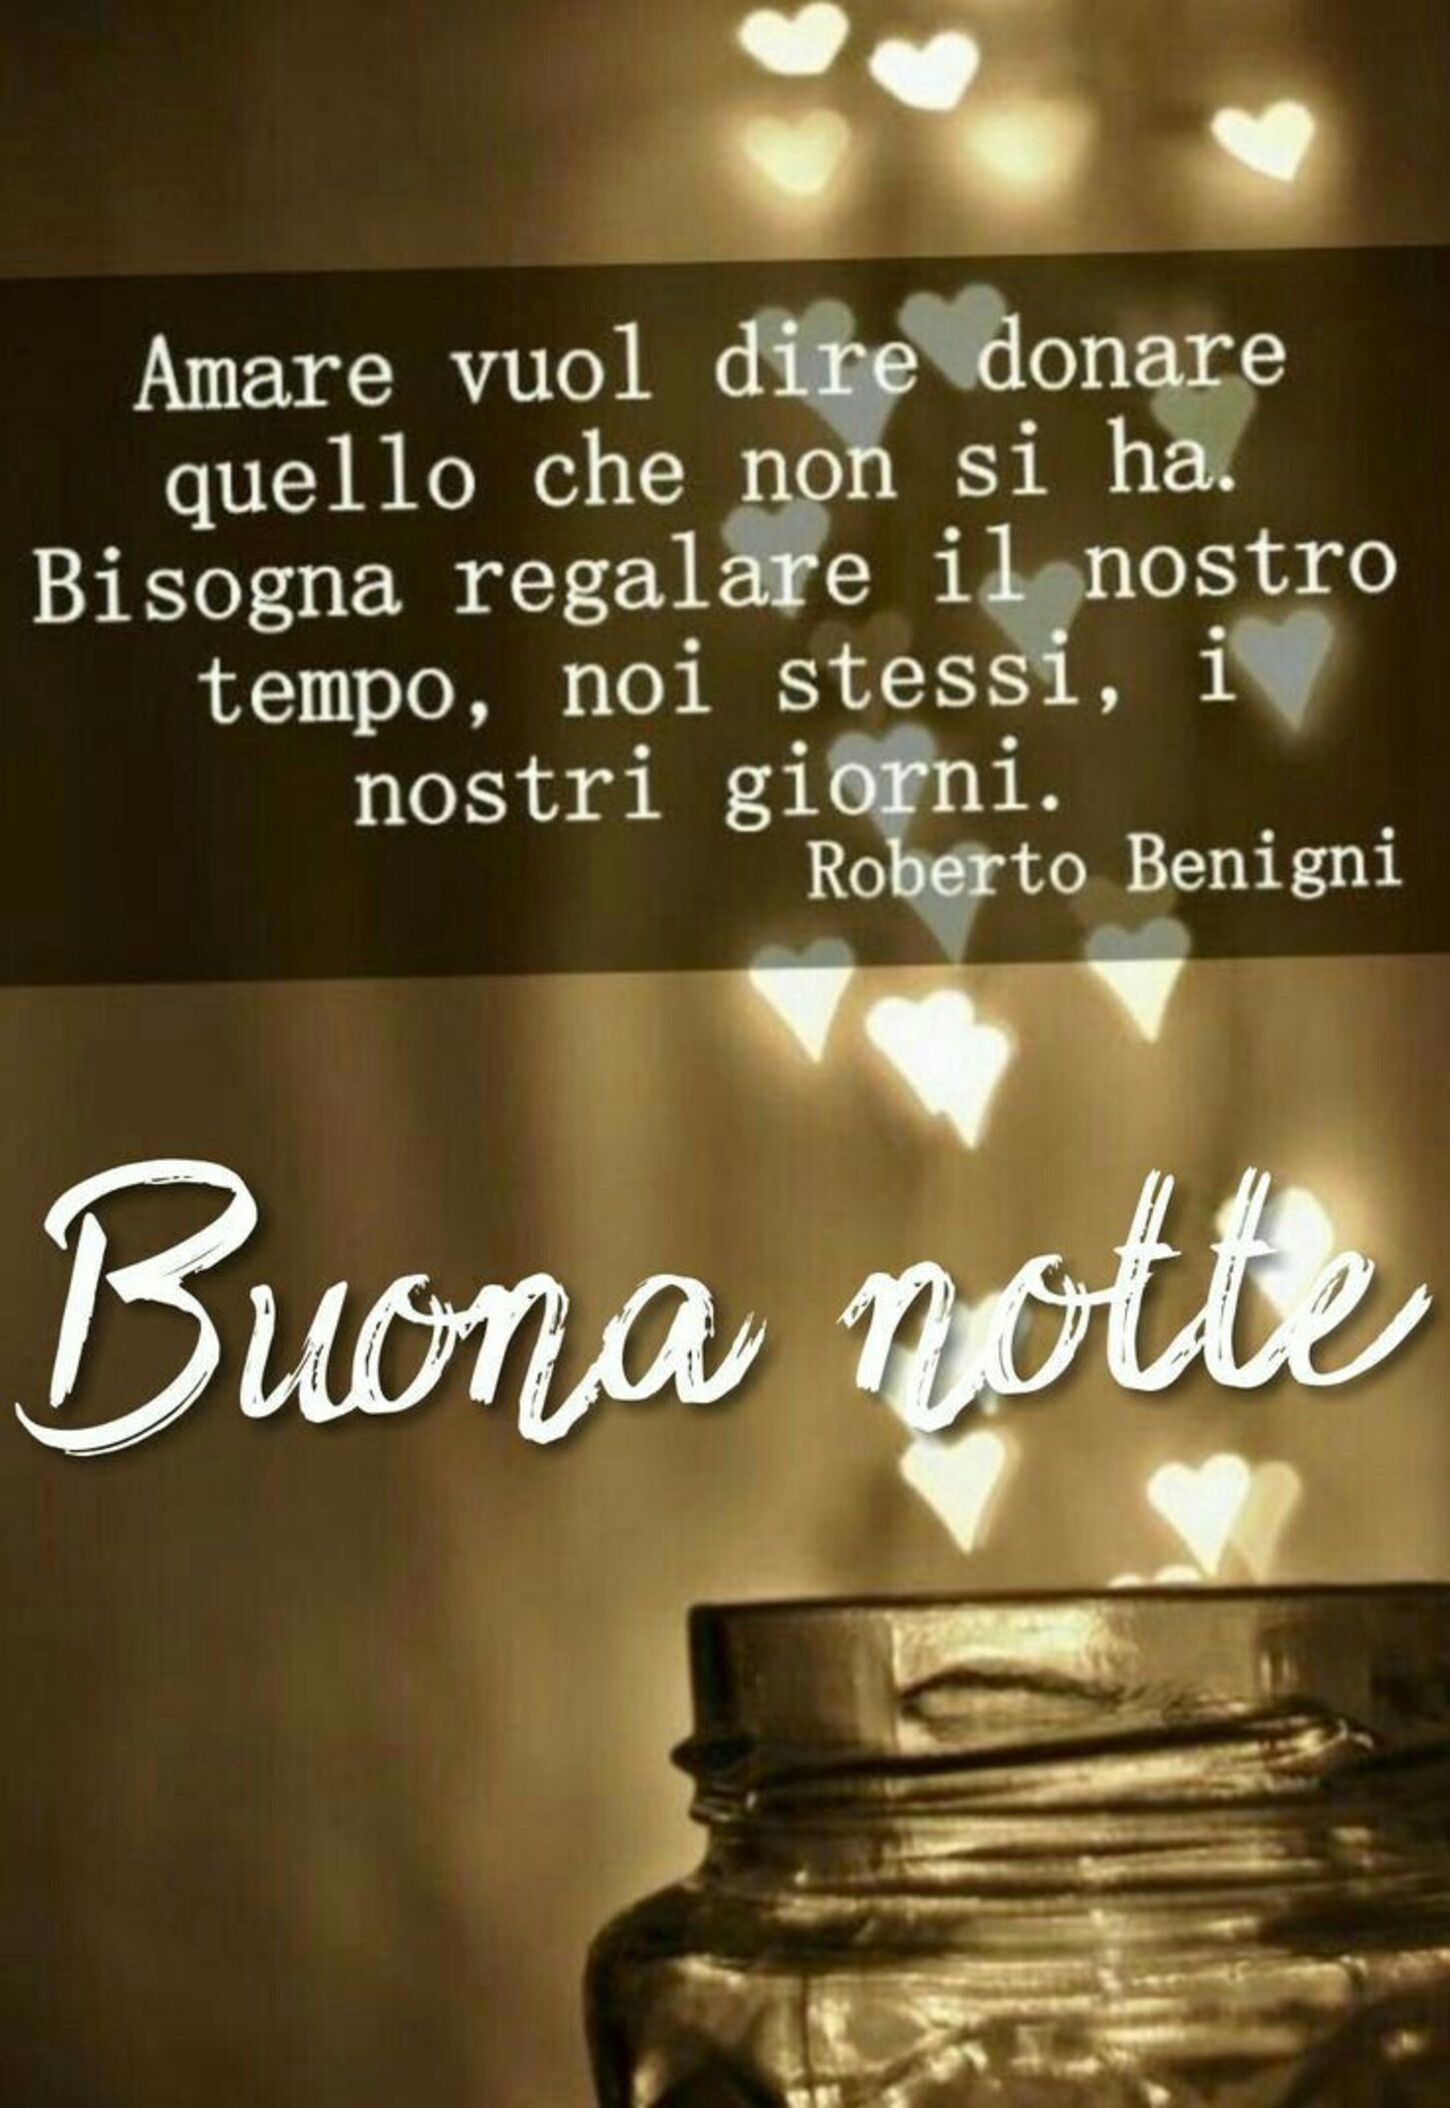 "Amare vuol dire donare quello che non si ha. Bisogna regalare il nostro tempo, noi stessi, i nostri giorni."  Buonanotte, Roberto Benigni